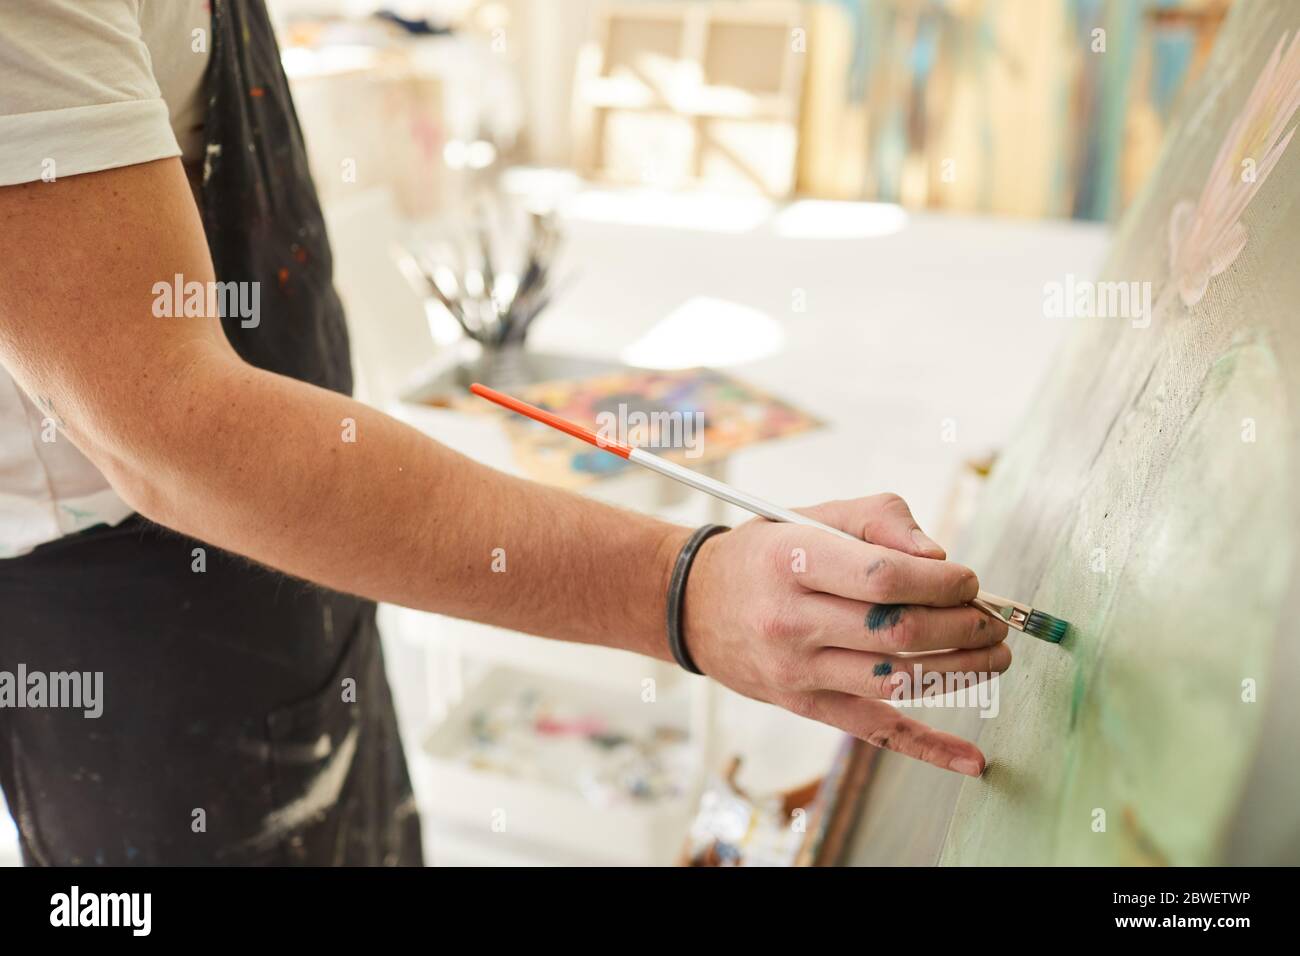 Primo piano di artista maschile irriconoscibile tenendo pennello e mettendo con attenzione i tratti di vernice mentre dipingono l'immagine su cavalletto, copia spazio Foto Stock